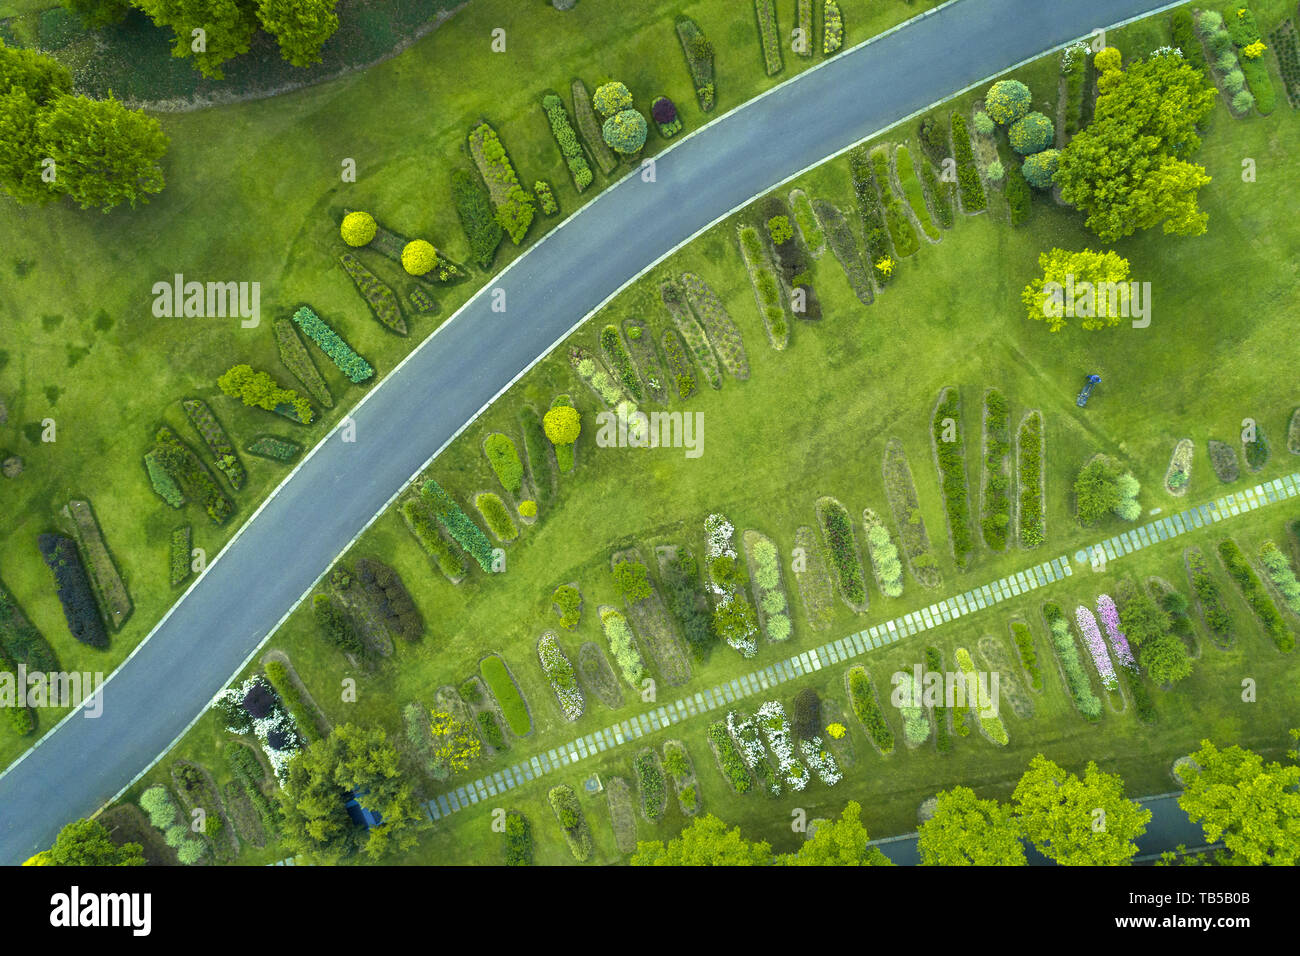 Vue aérienne du parc avec une pelouse verte et chemins Banque D'Images